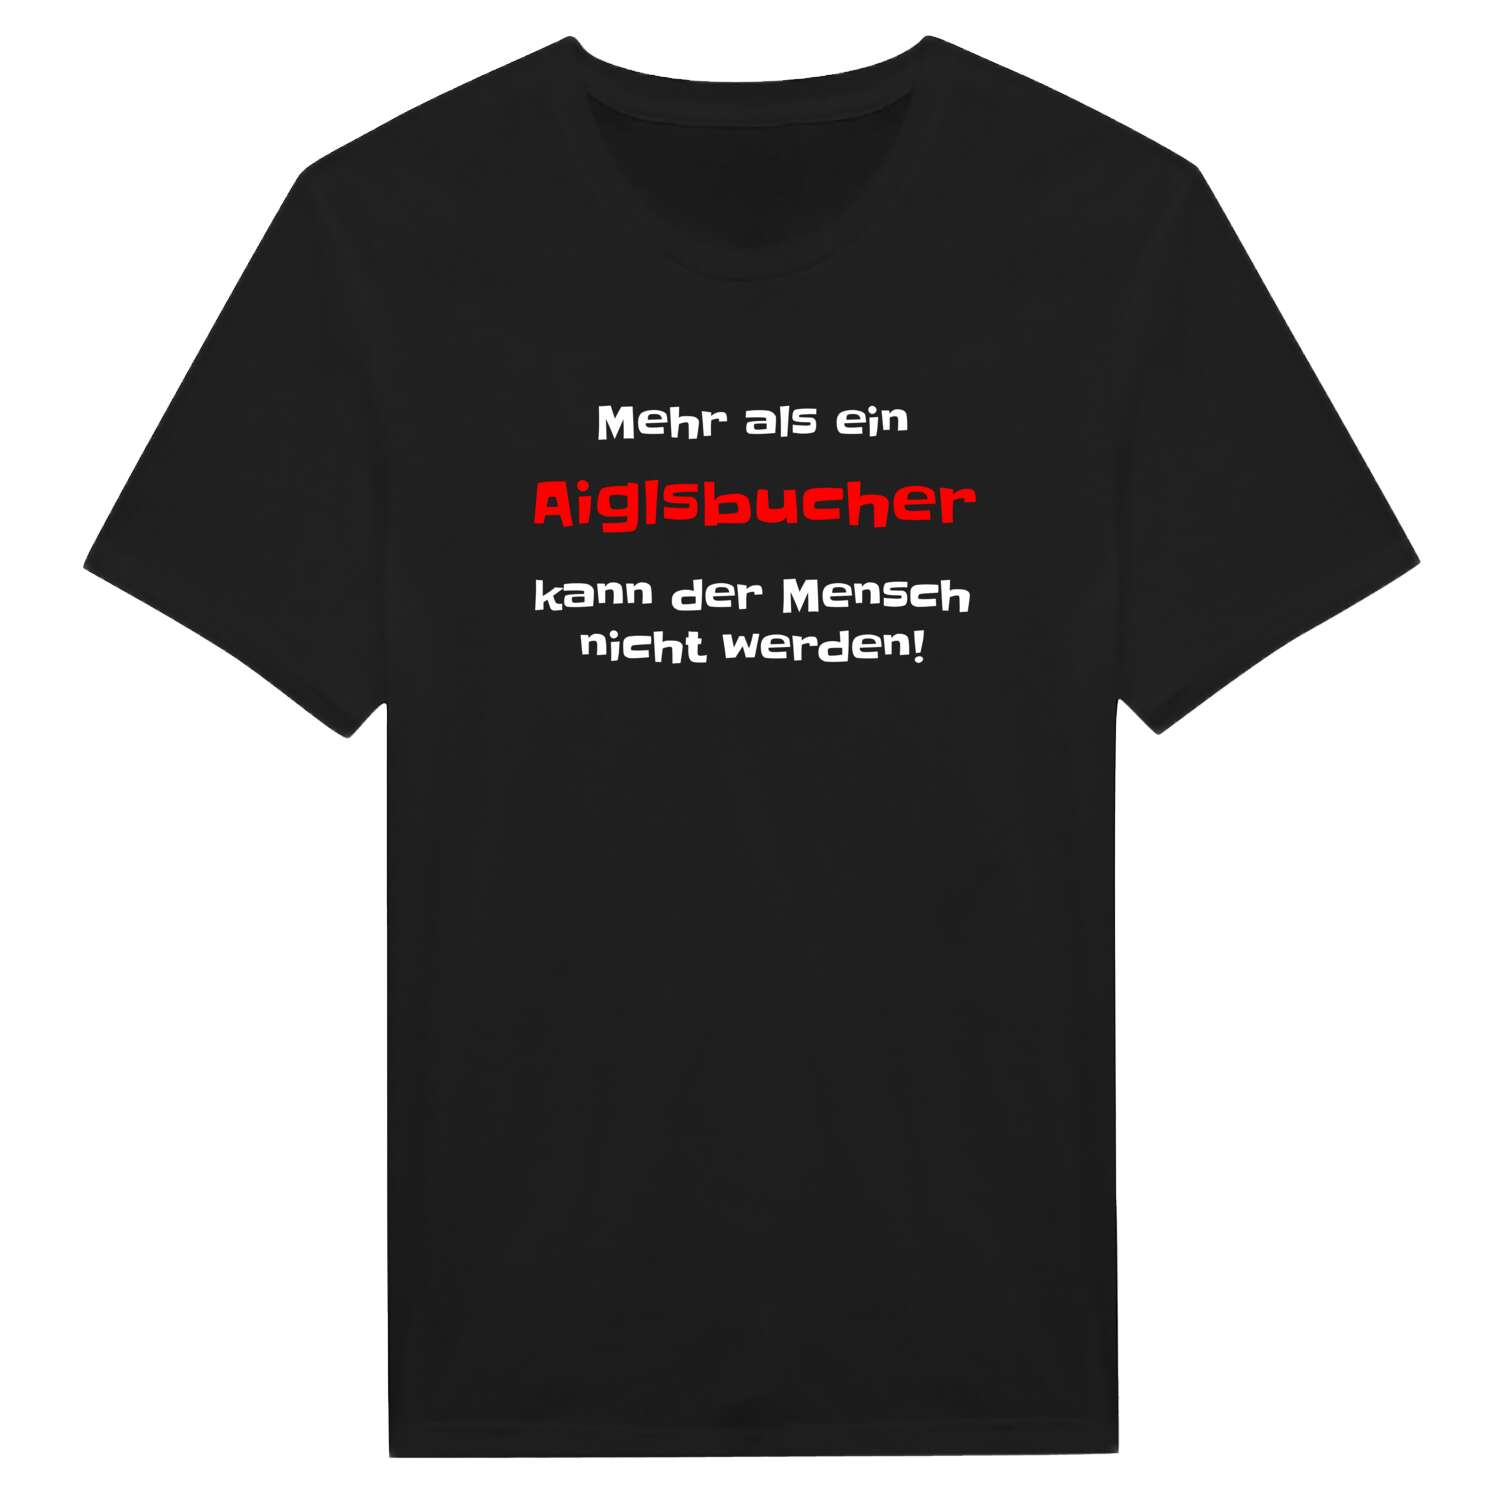 Aiglsbuch T-Shirt »Mehr als ein«